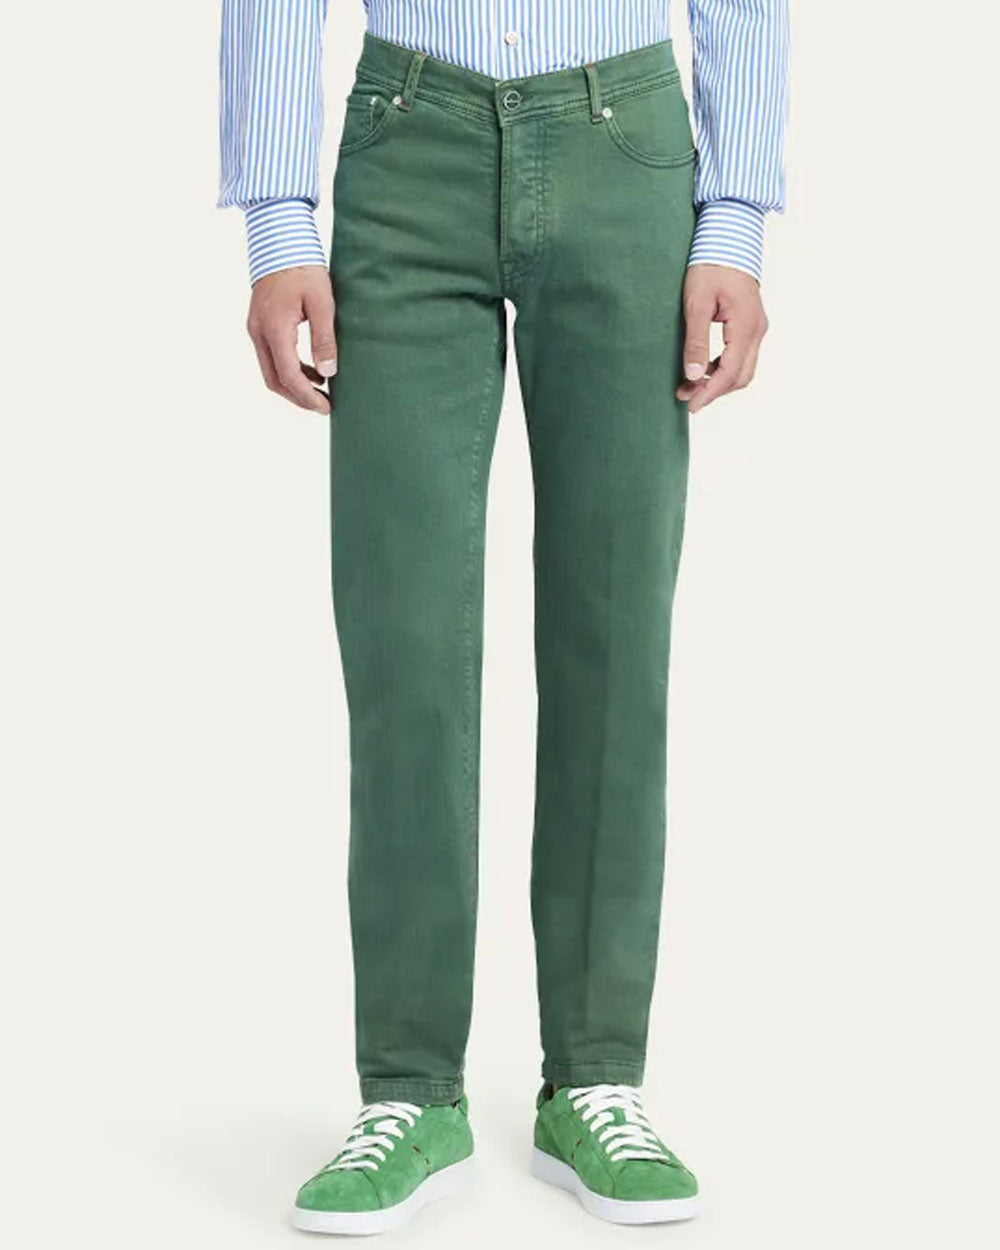 Green 5 Pocket Pant